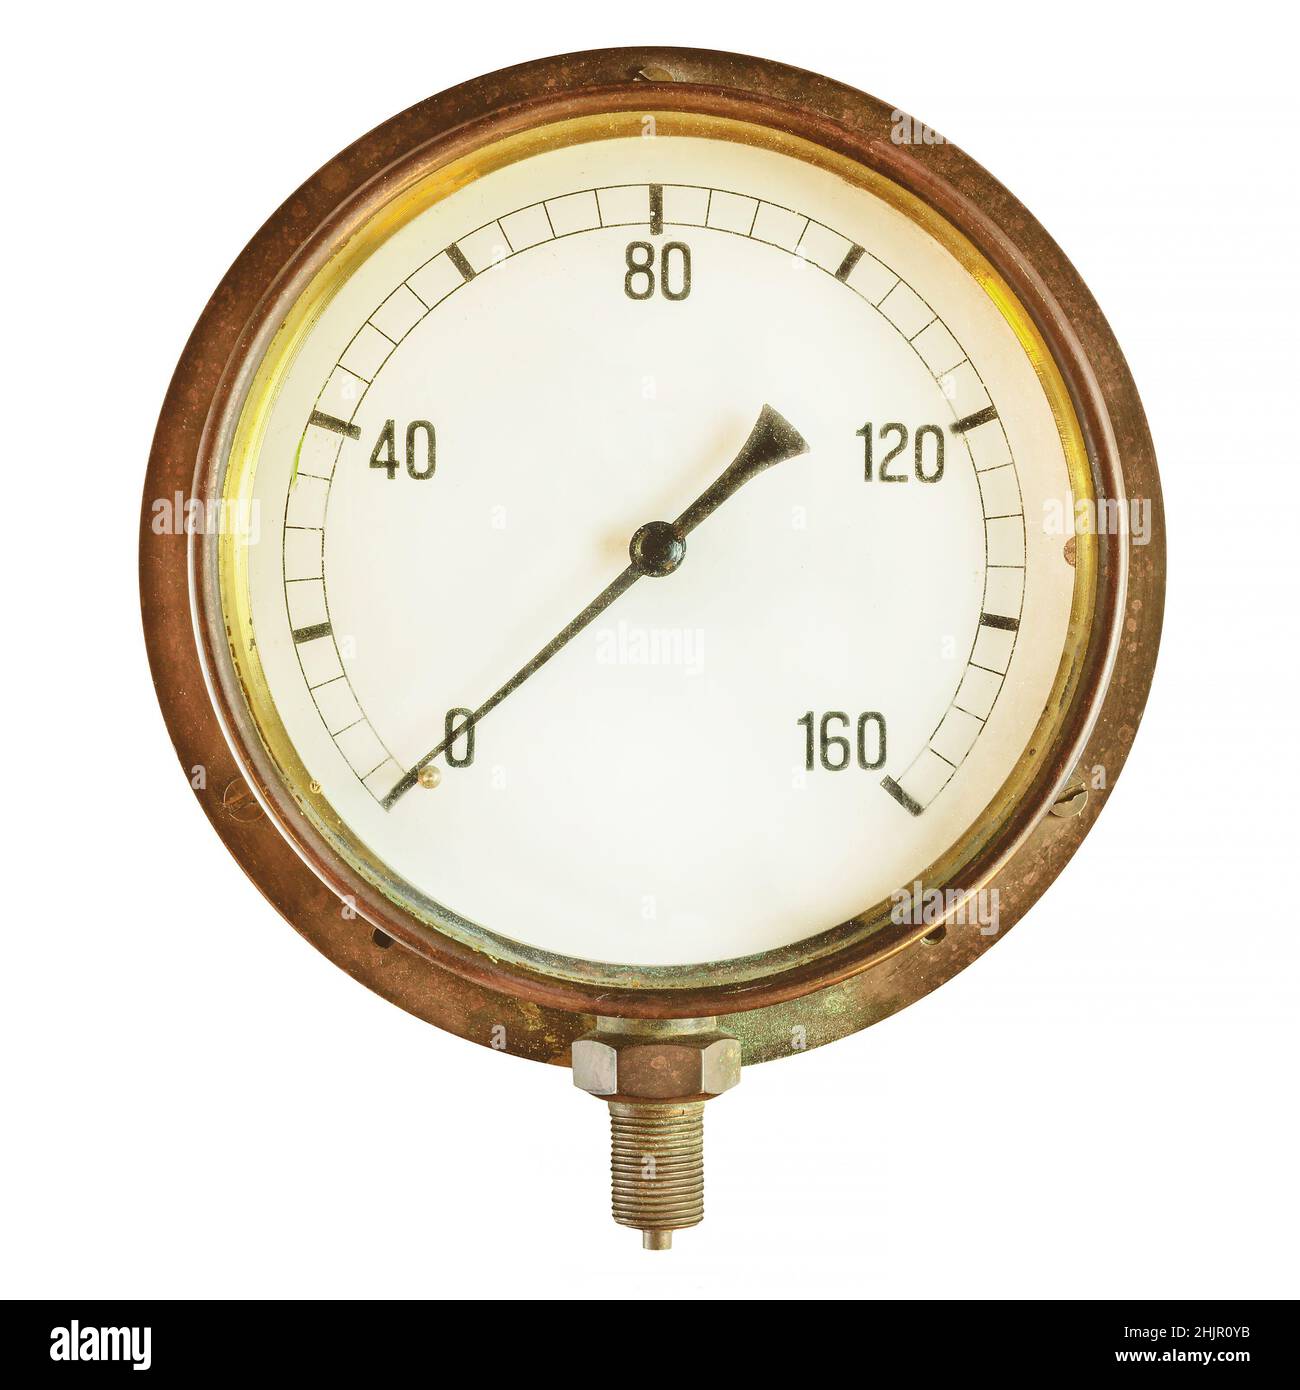 Antico misuratore di pressione industriale isolato su sfondo bianco Foto Stock